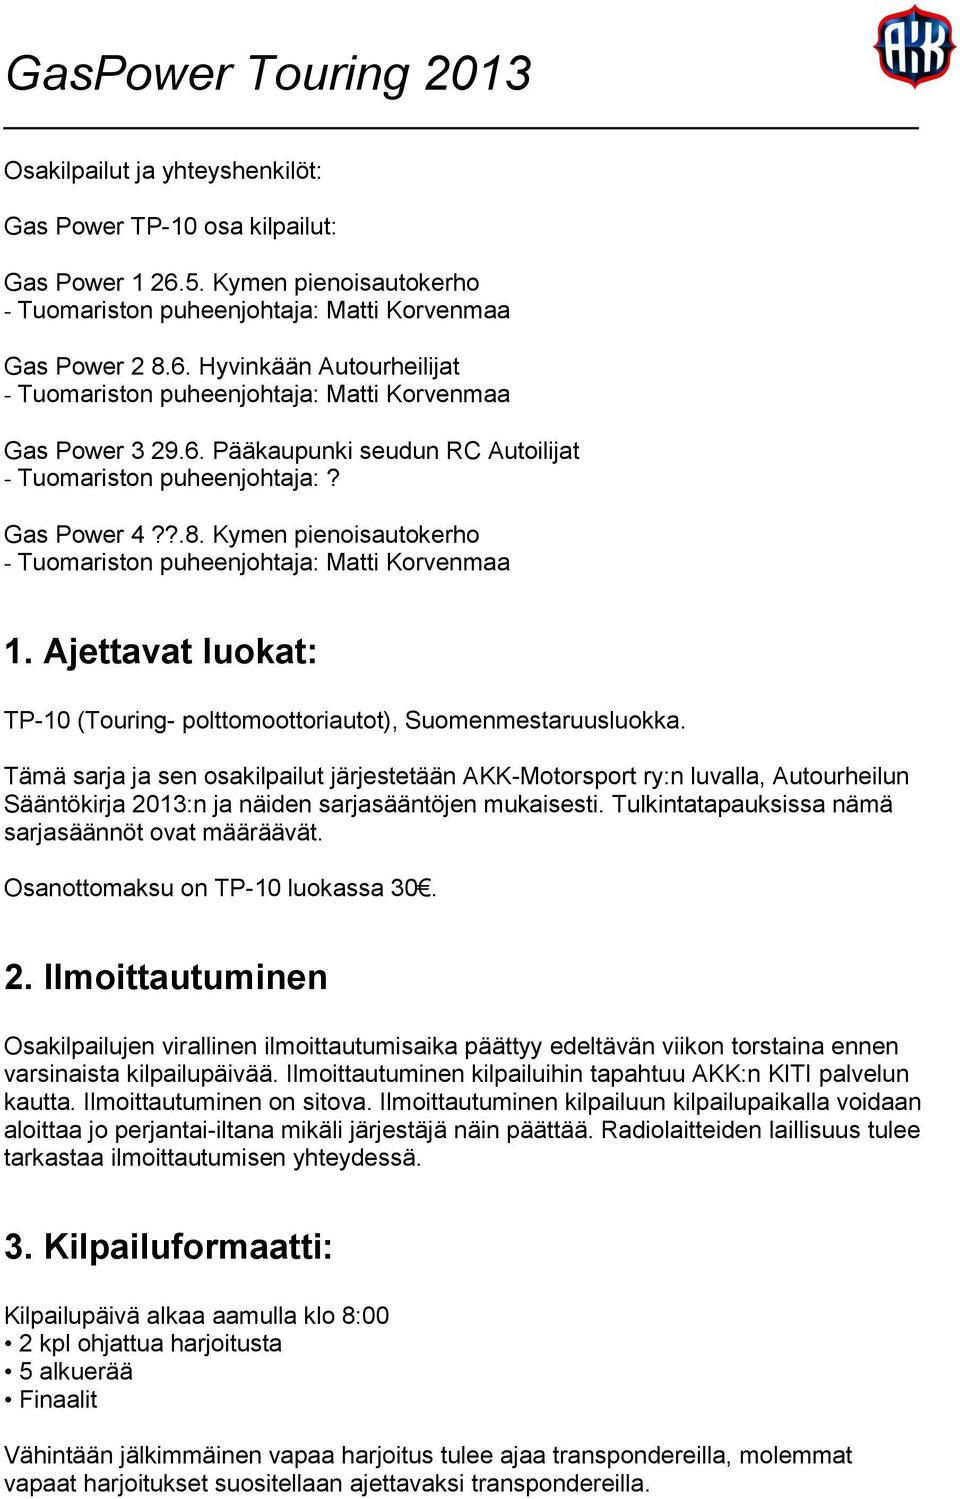 Ajettavat luokat: TP-10 (Touring- polttomoottoriautot), Suomenmestaruusluokka.